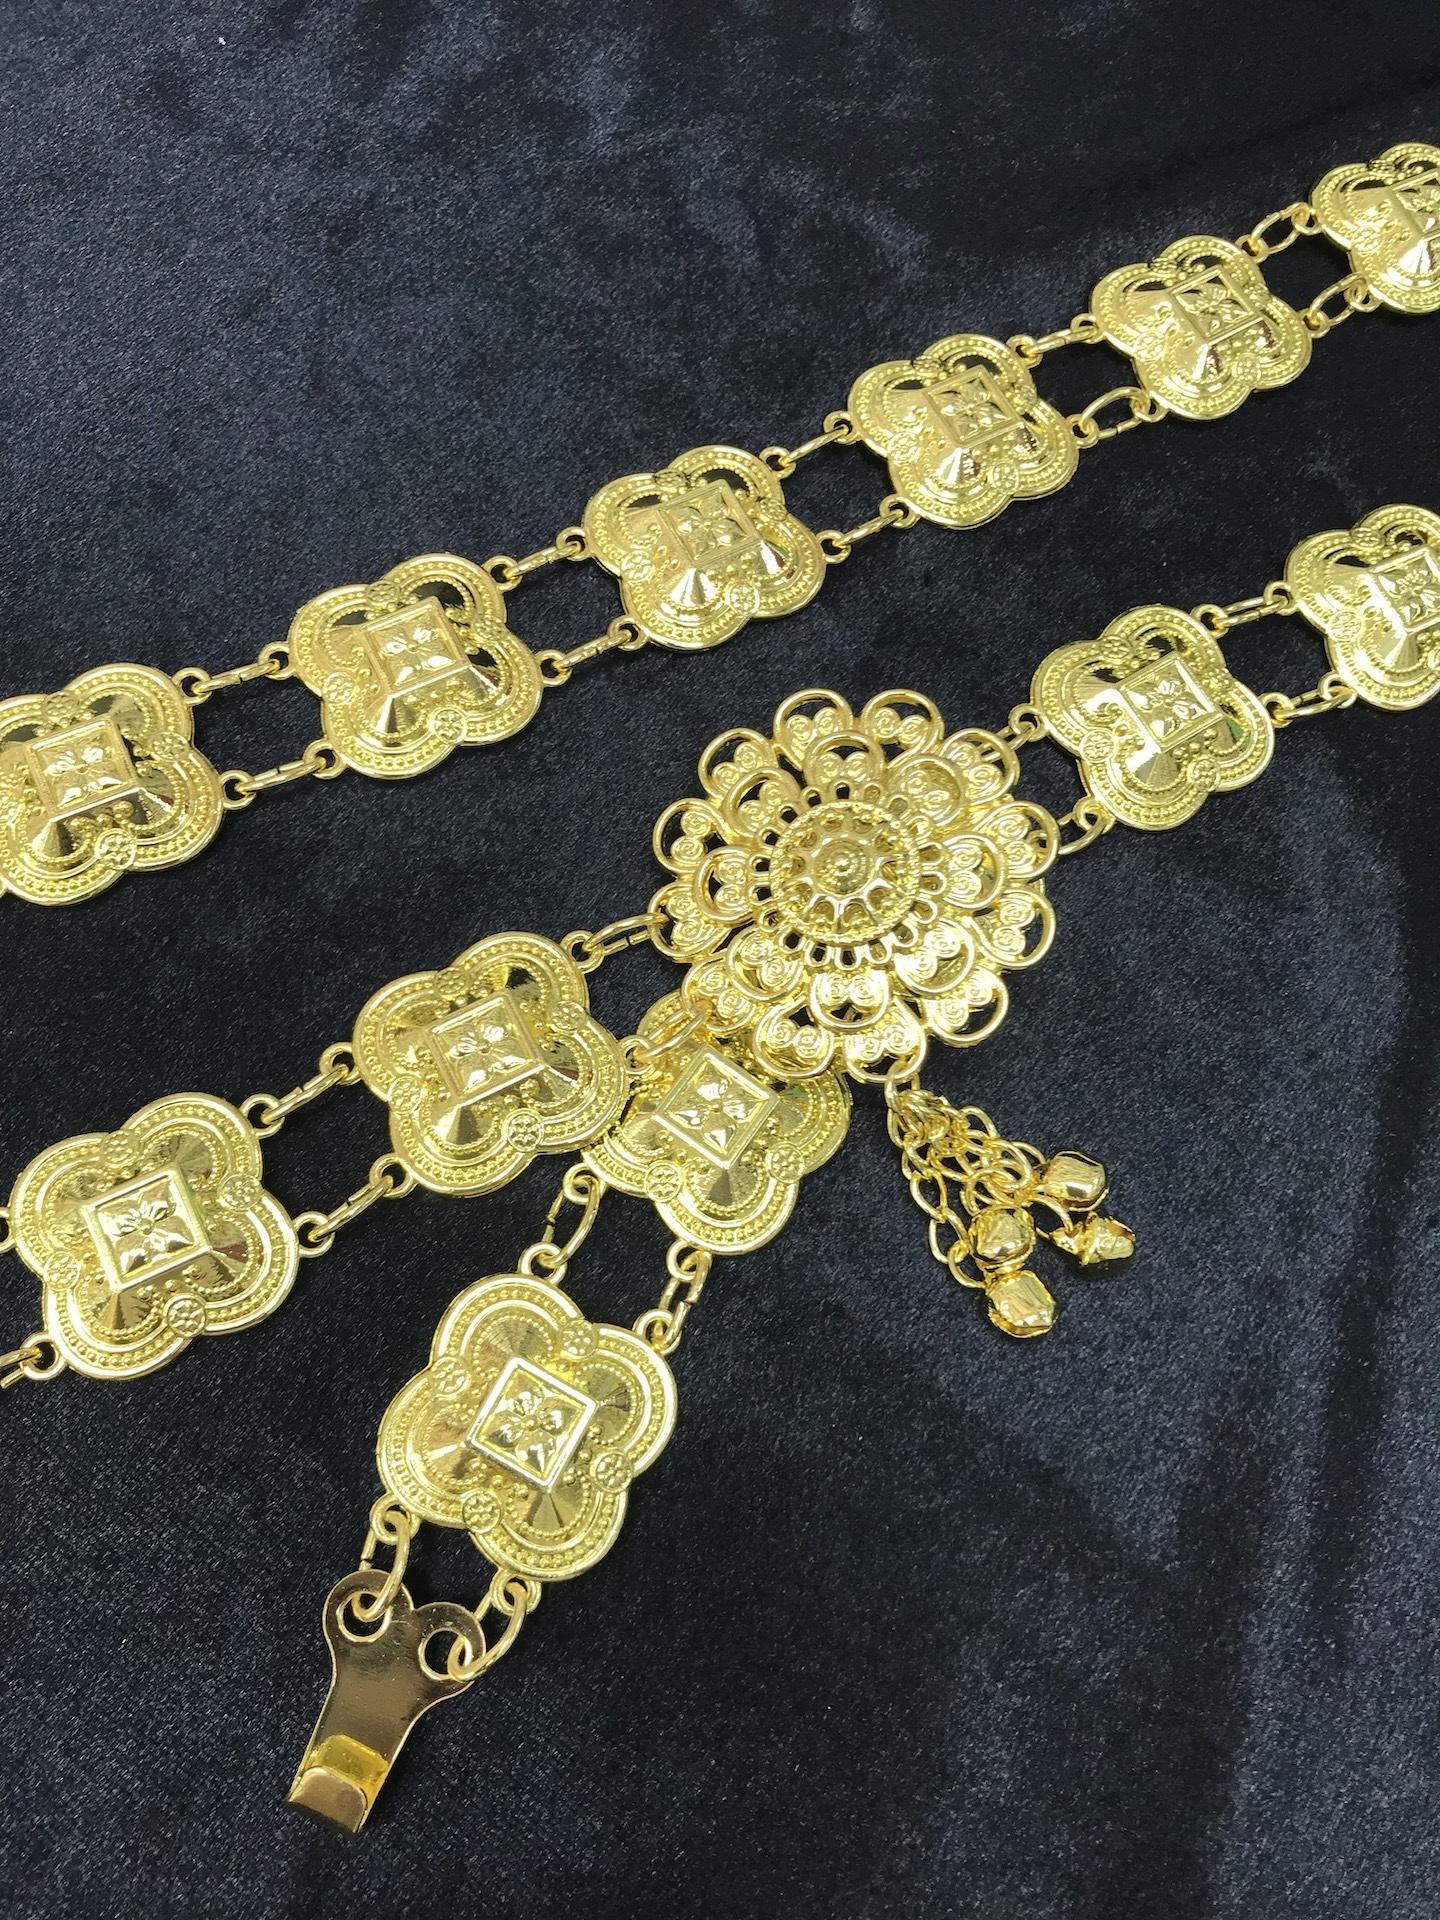 Vintage jewelry เครืองประดับโบราณเข็มขัดดอกไม้อีสานชุดล้านนาไทหัวเข็มขัด สีทอง